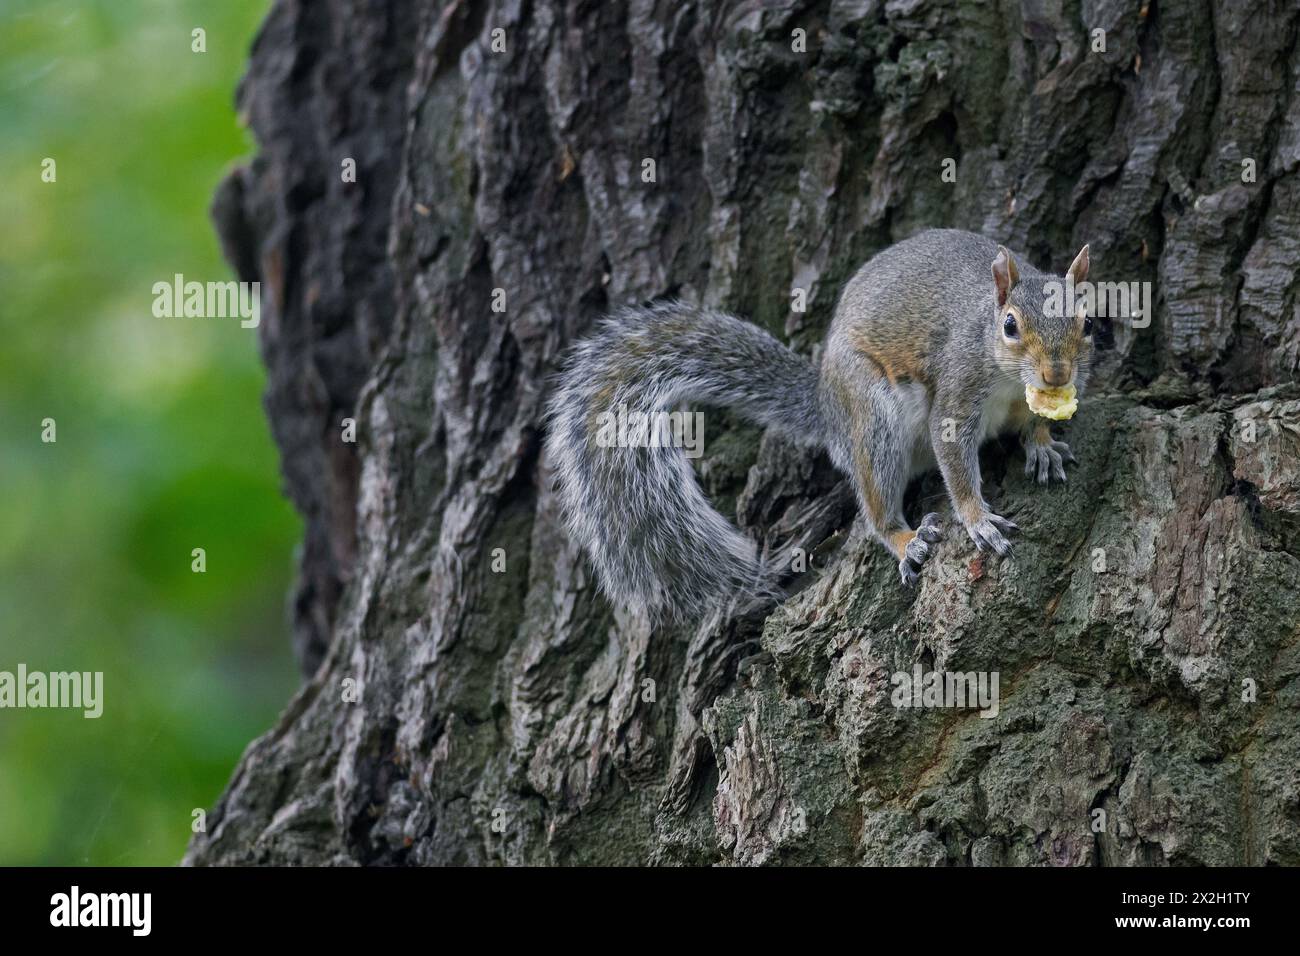 Grauhörnchen (Sciurus carolinensis), eingeführt Arten aus Nordamerika, klettern Baum im Stadtpark in England, Großbritannien Stockfoto